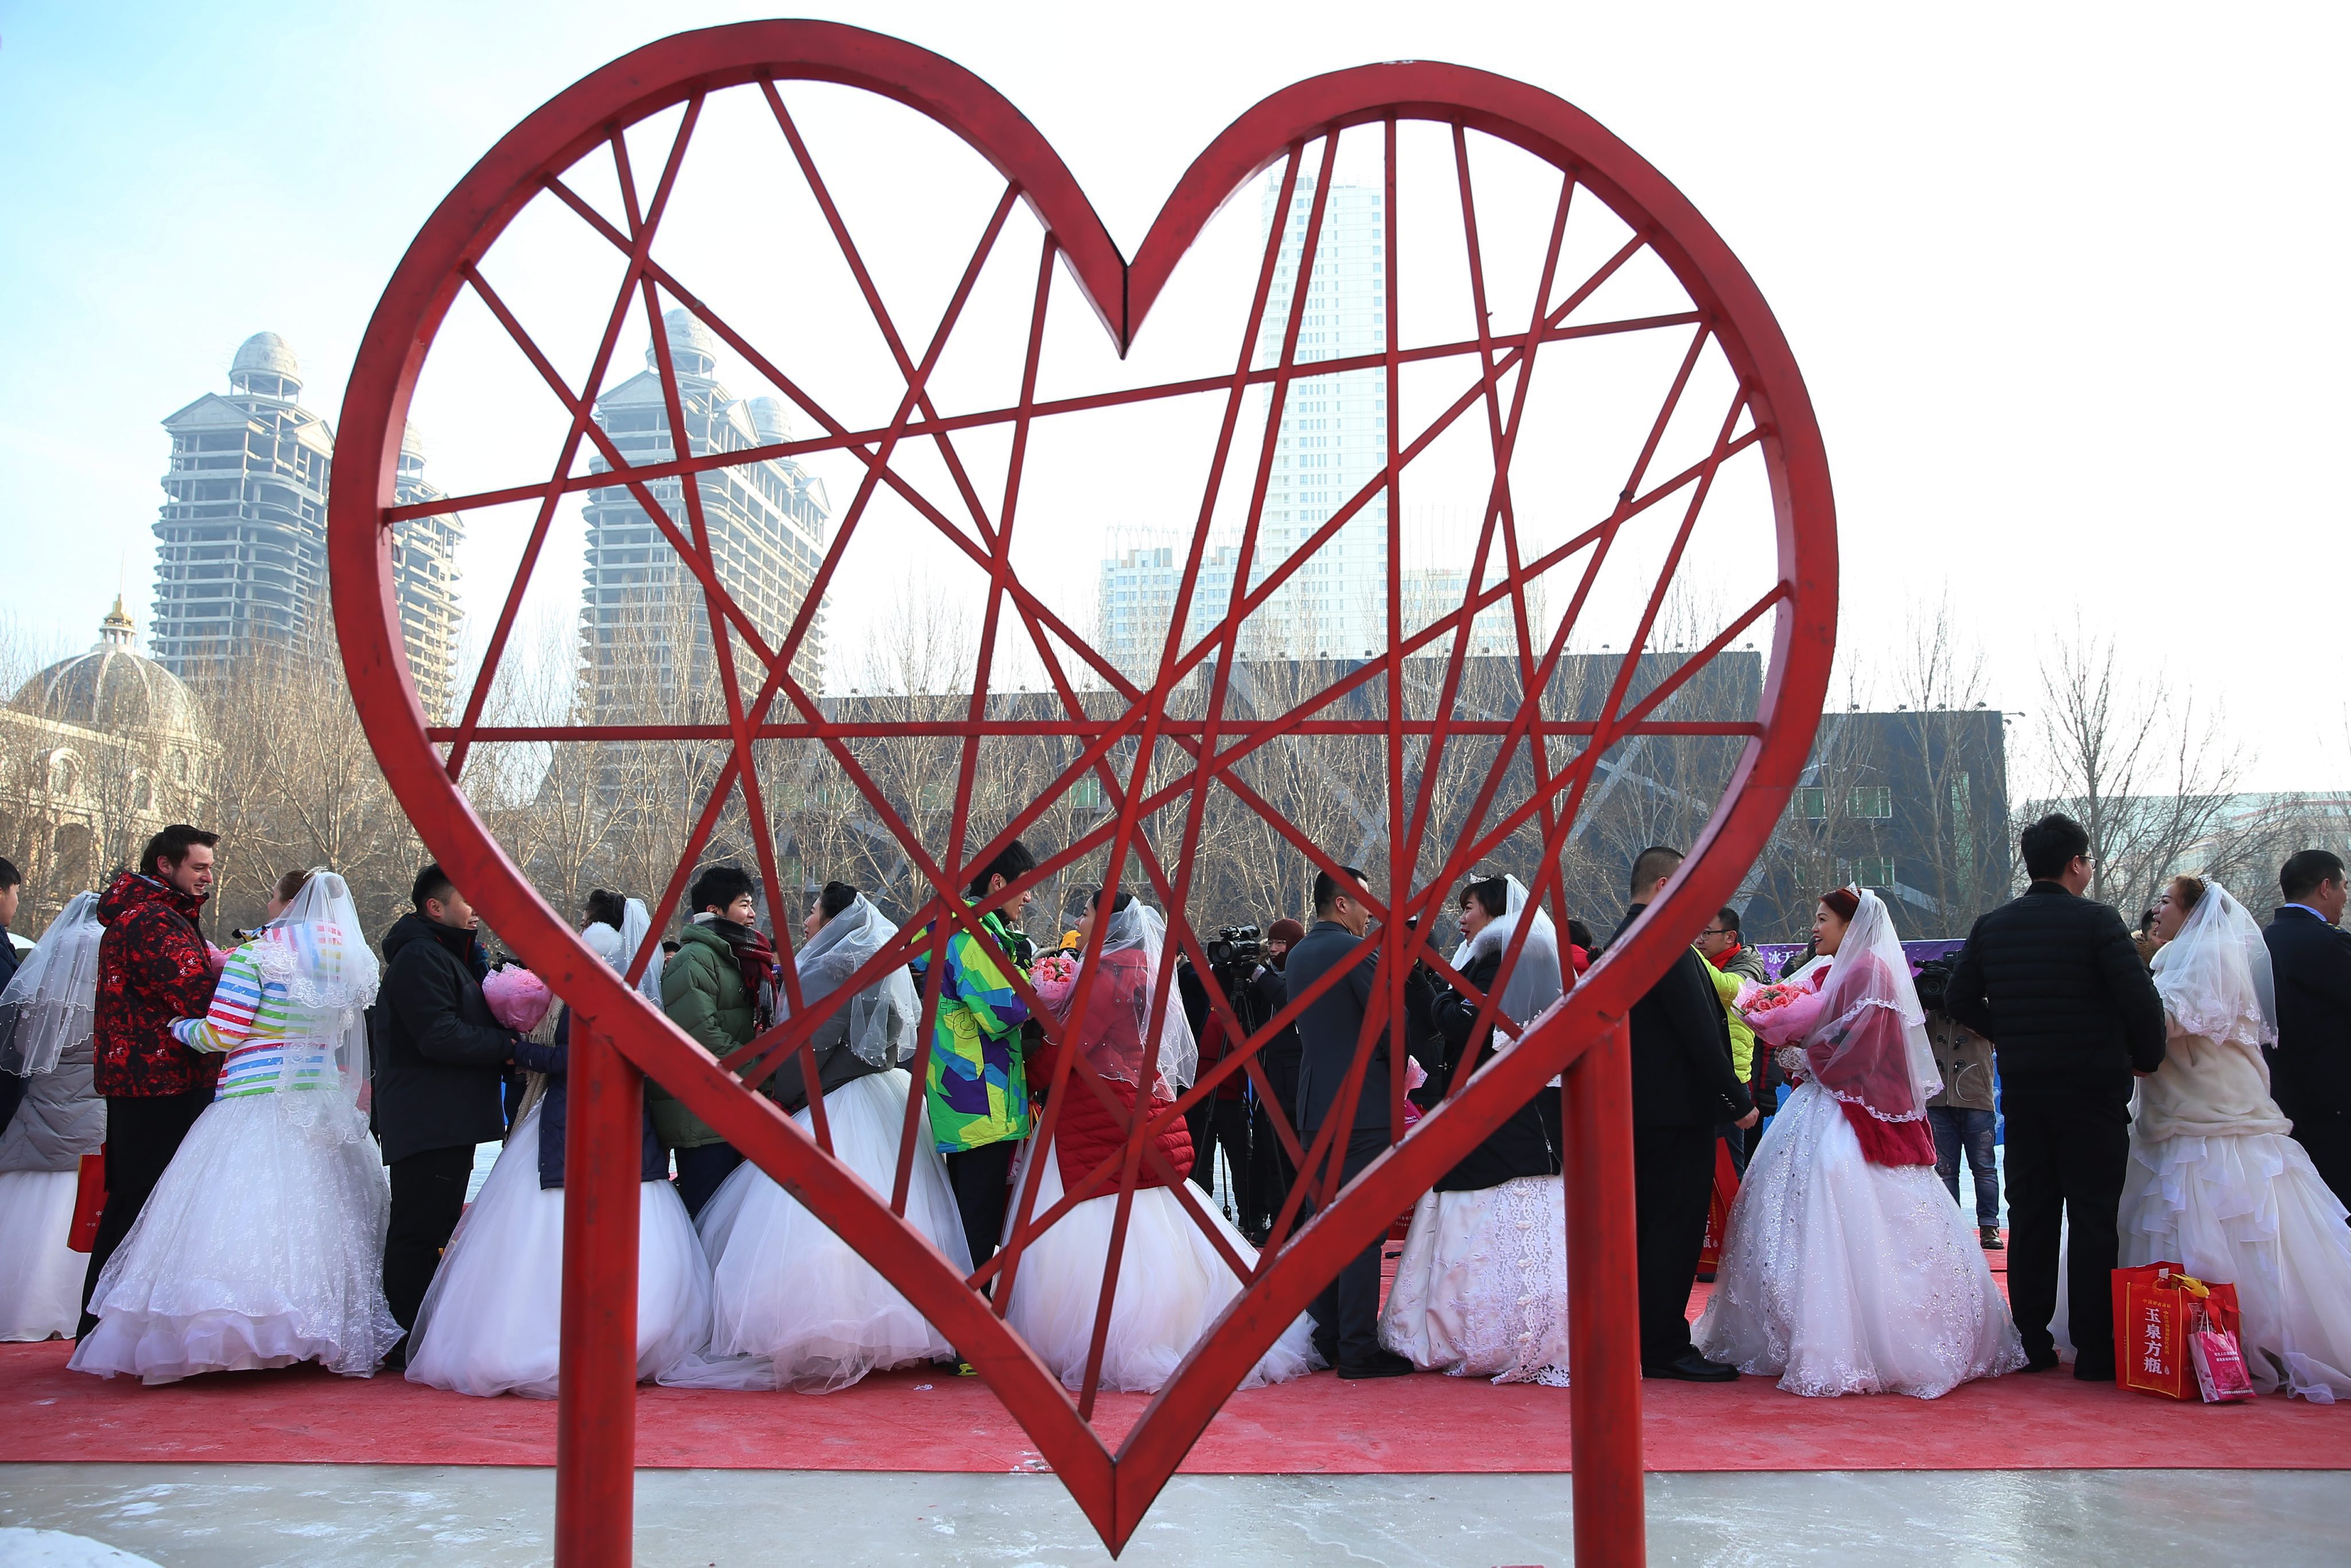 В Китай се състоя 33-ят фестивал на леда в град Харбин, провинция Хъйлундзян. 180 хил. кубически метра лед и 150 хил. кубически метра сняг са били използвани за направата на огромните цветни скулптури. Фестивалът ще продължи три месеца. По време на събитието 18 влюбени двойки сключиха брак едновременно.